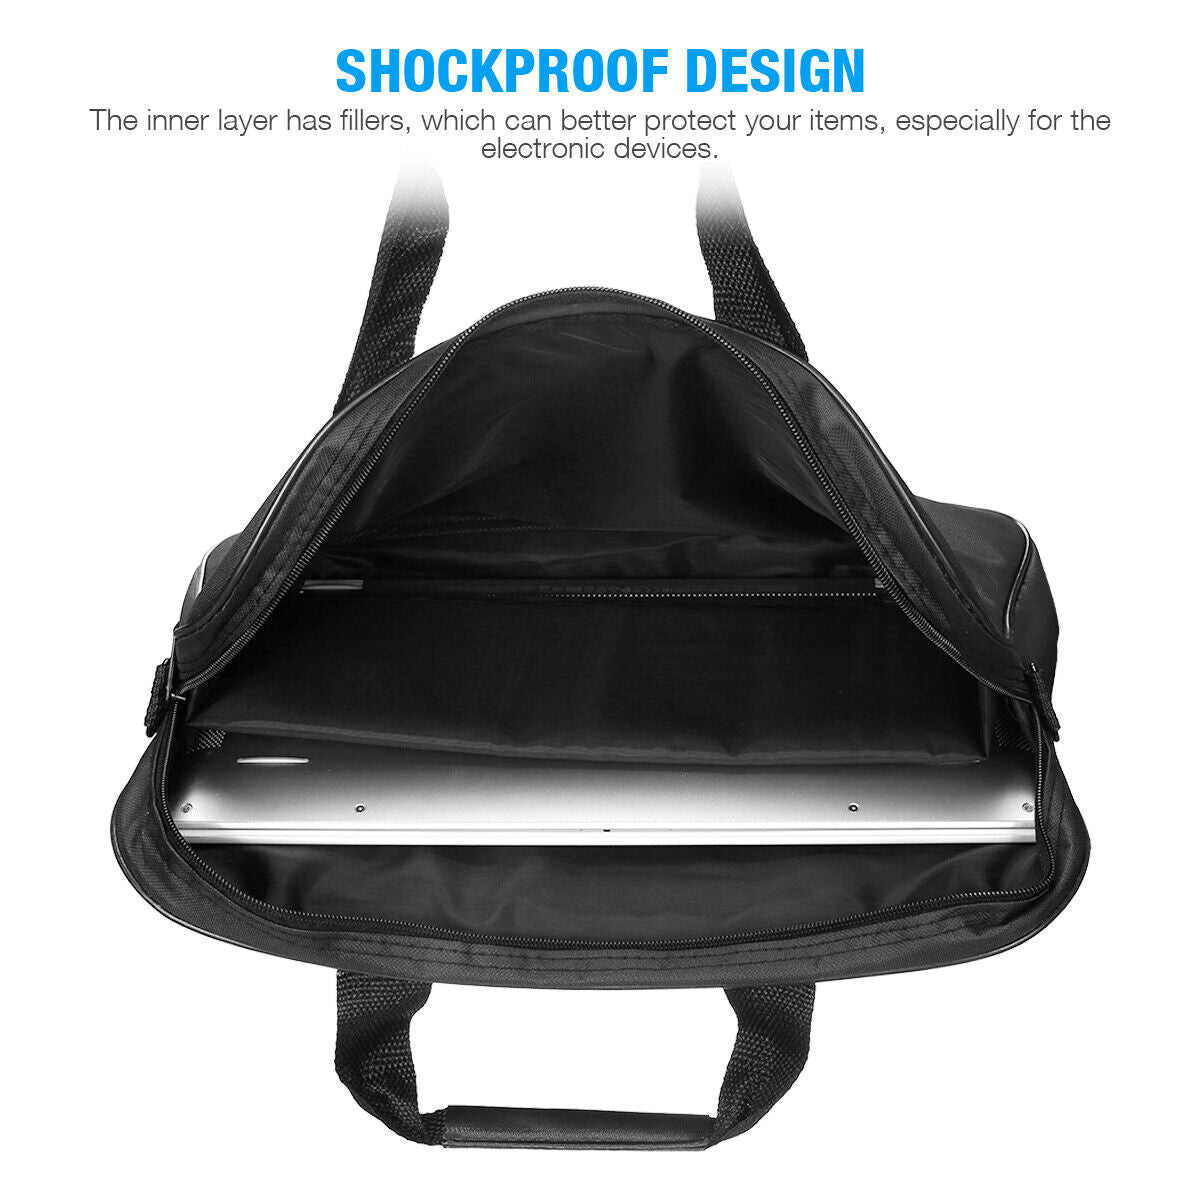 Laptop Bag Case With Shoulder Strap For 13"14"15.6" HP/Lenovo/ Asus/Macbook DELL